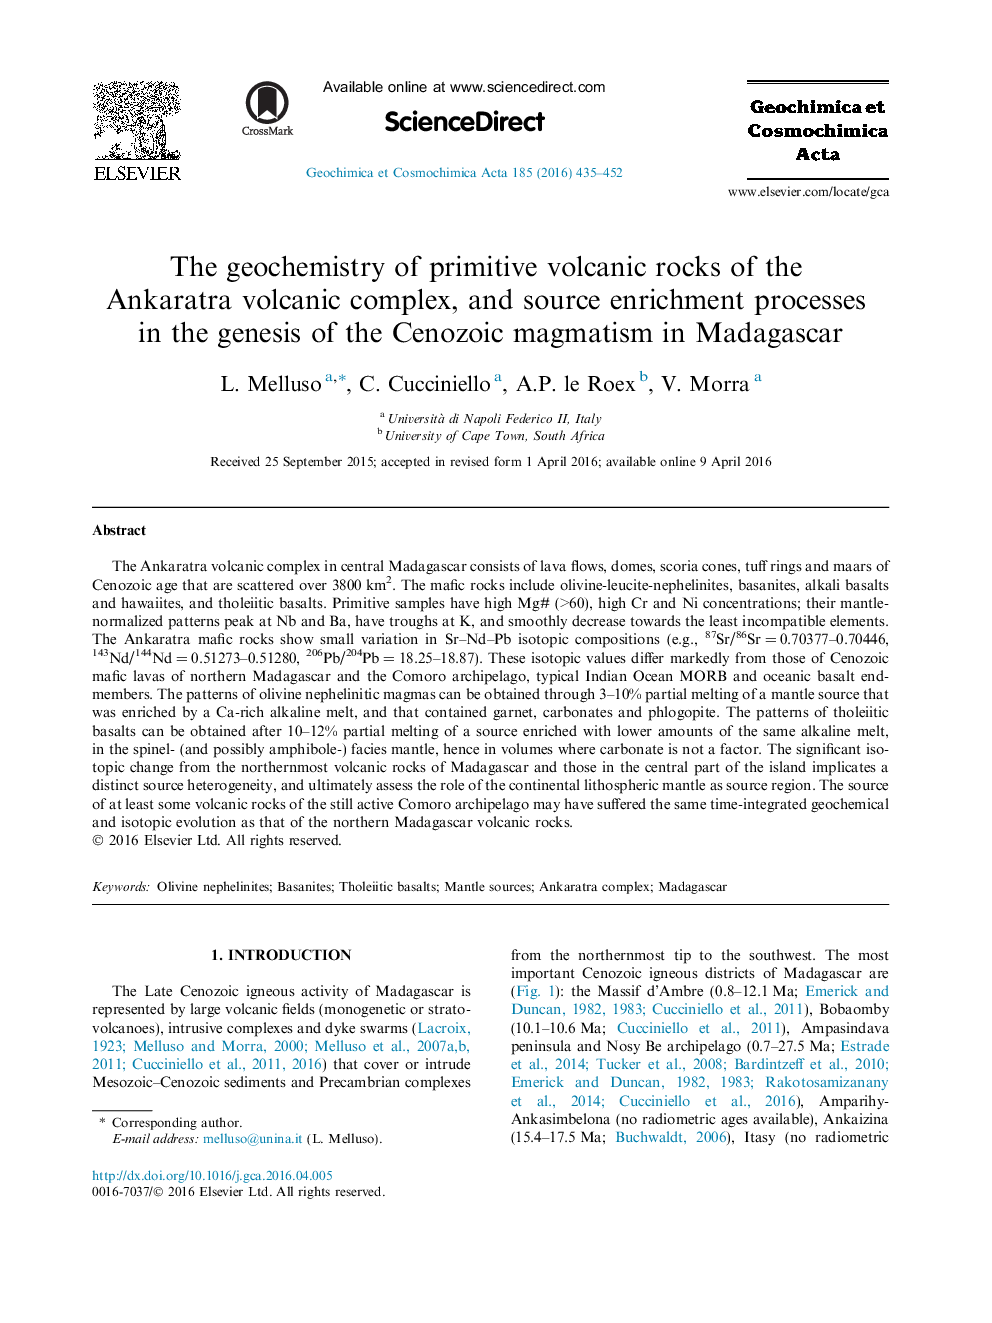 ژئوشیمی سنگهای آتشفشانی اولیه از مجتمع آتشفشانی آنکاراترا و فرایندهای غنی سازی منبع در پیدایش ماگماتیسم کانوزوئیک در ماداگاسکار 